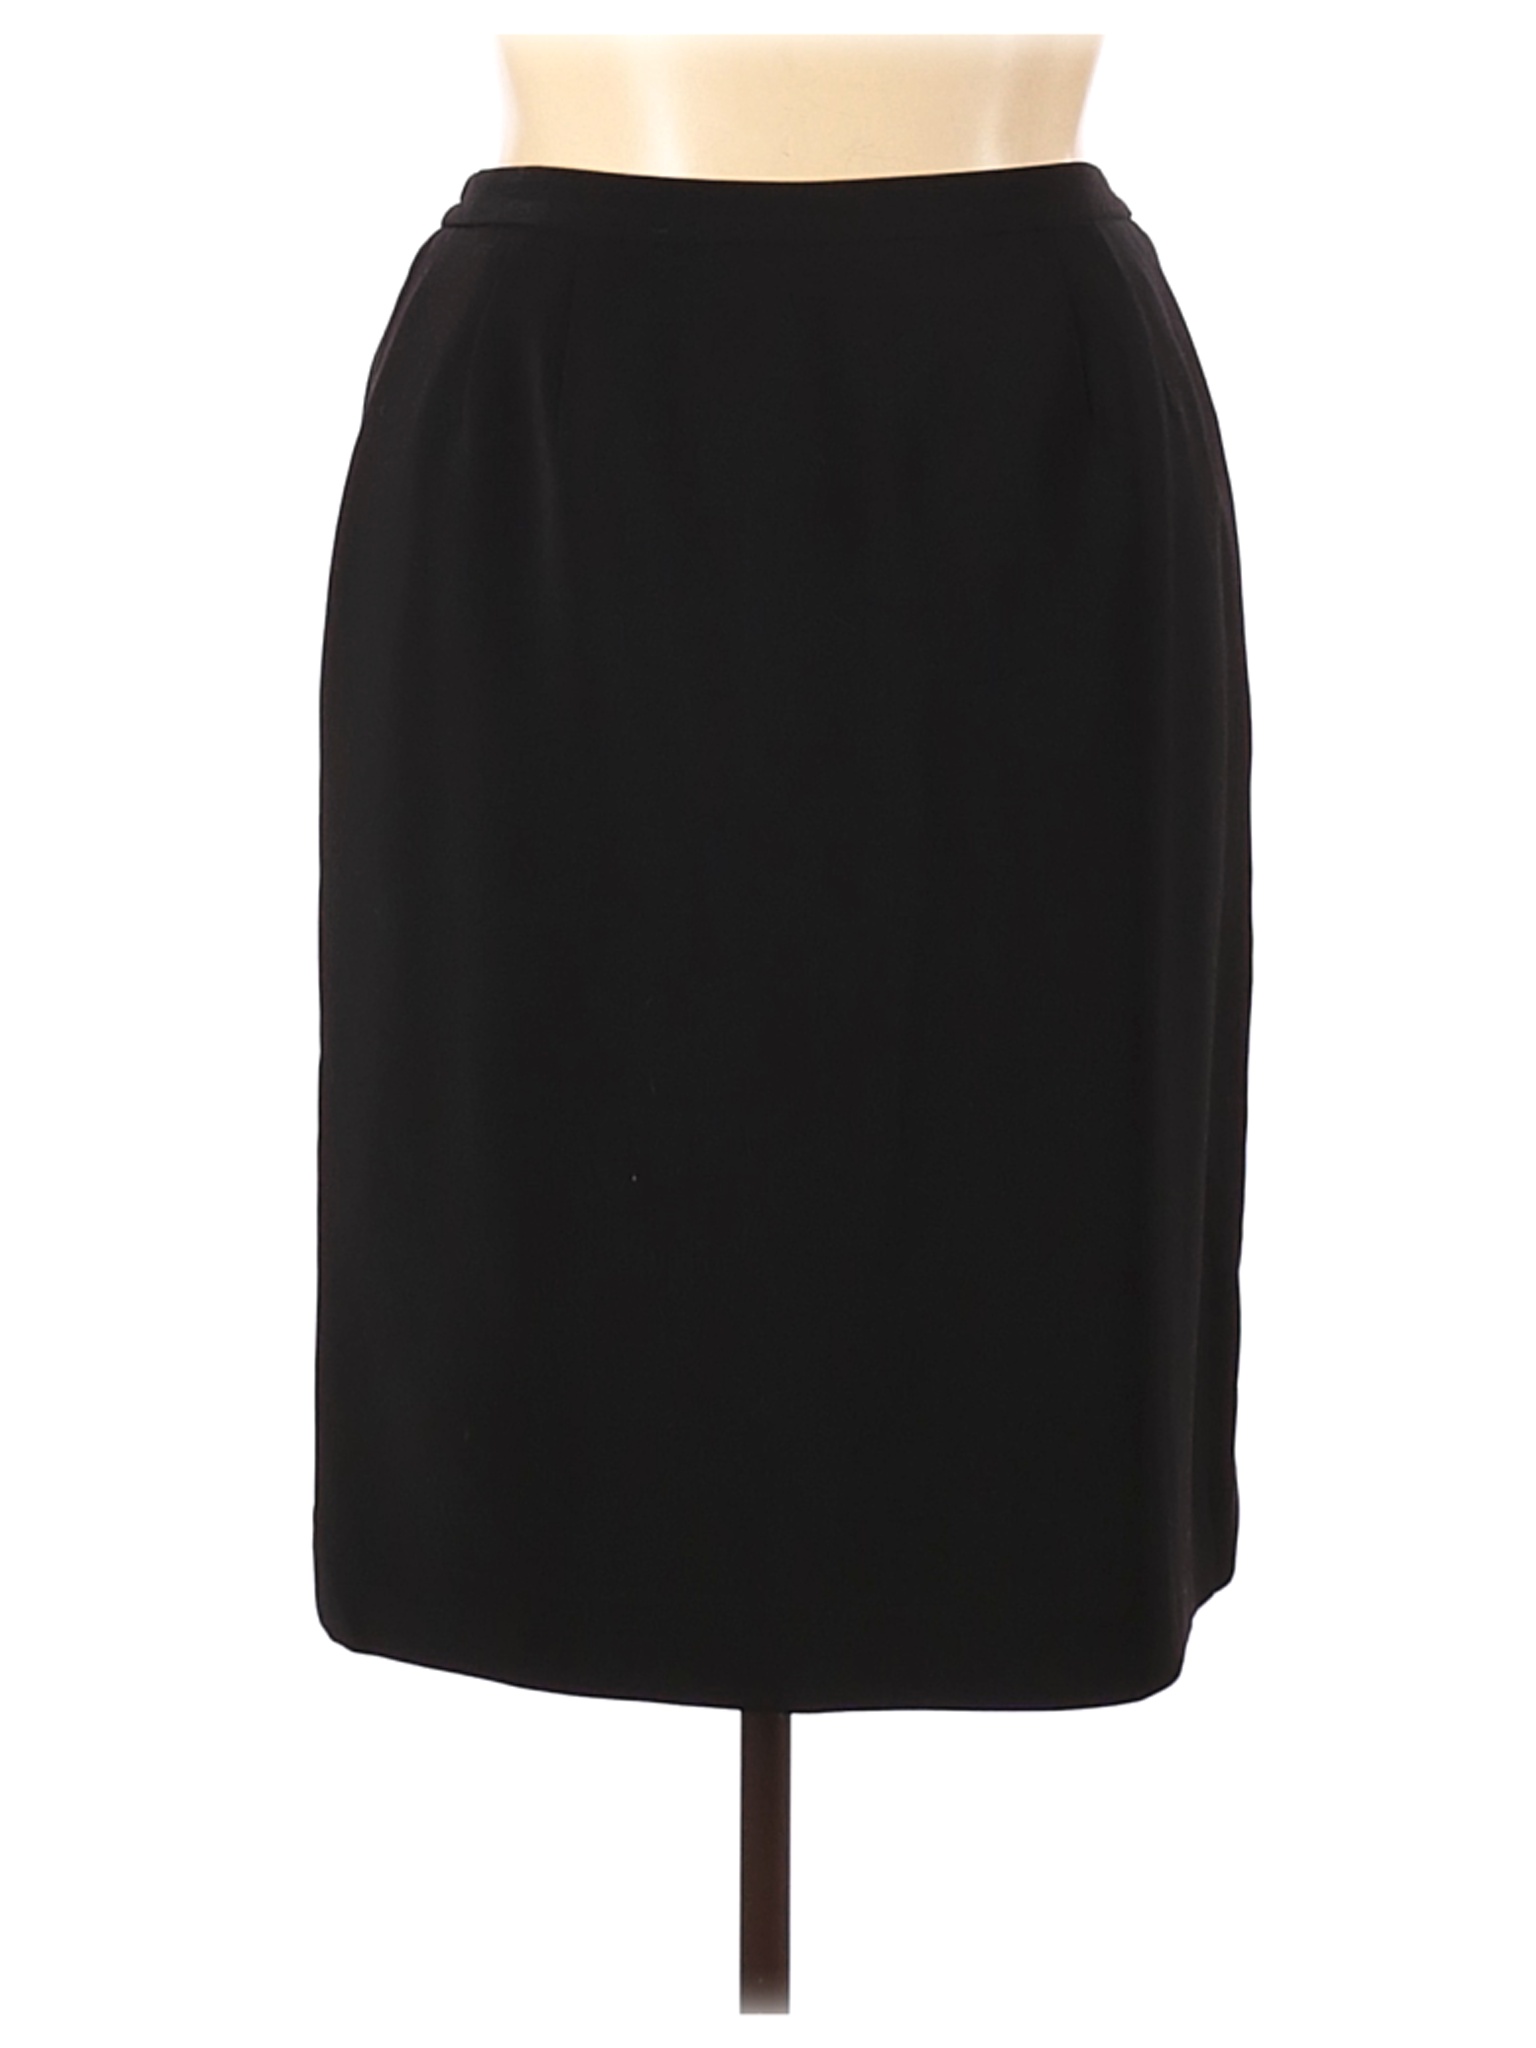 Le Suit Women Black Casual Skirt 14 Petites | eBay